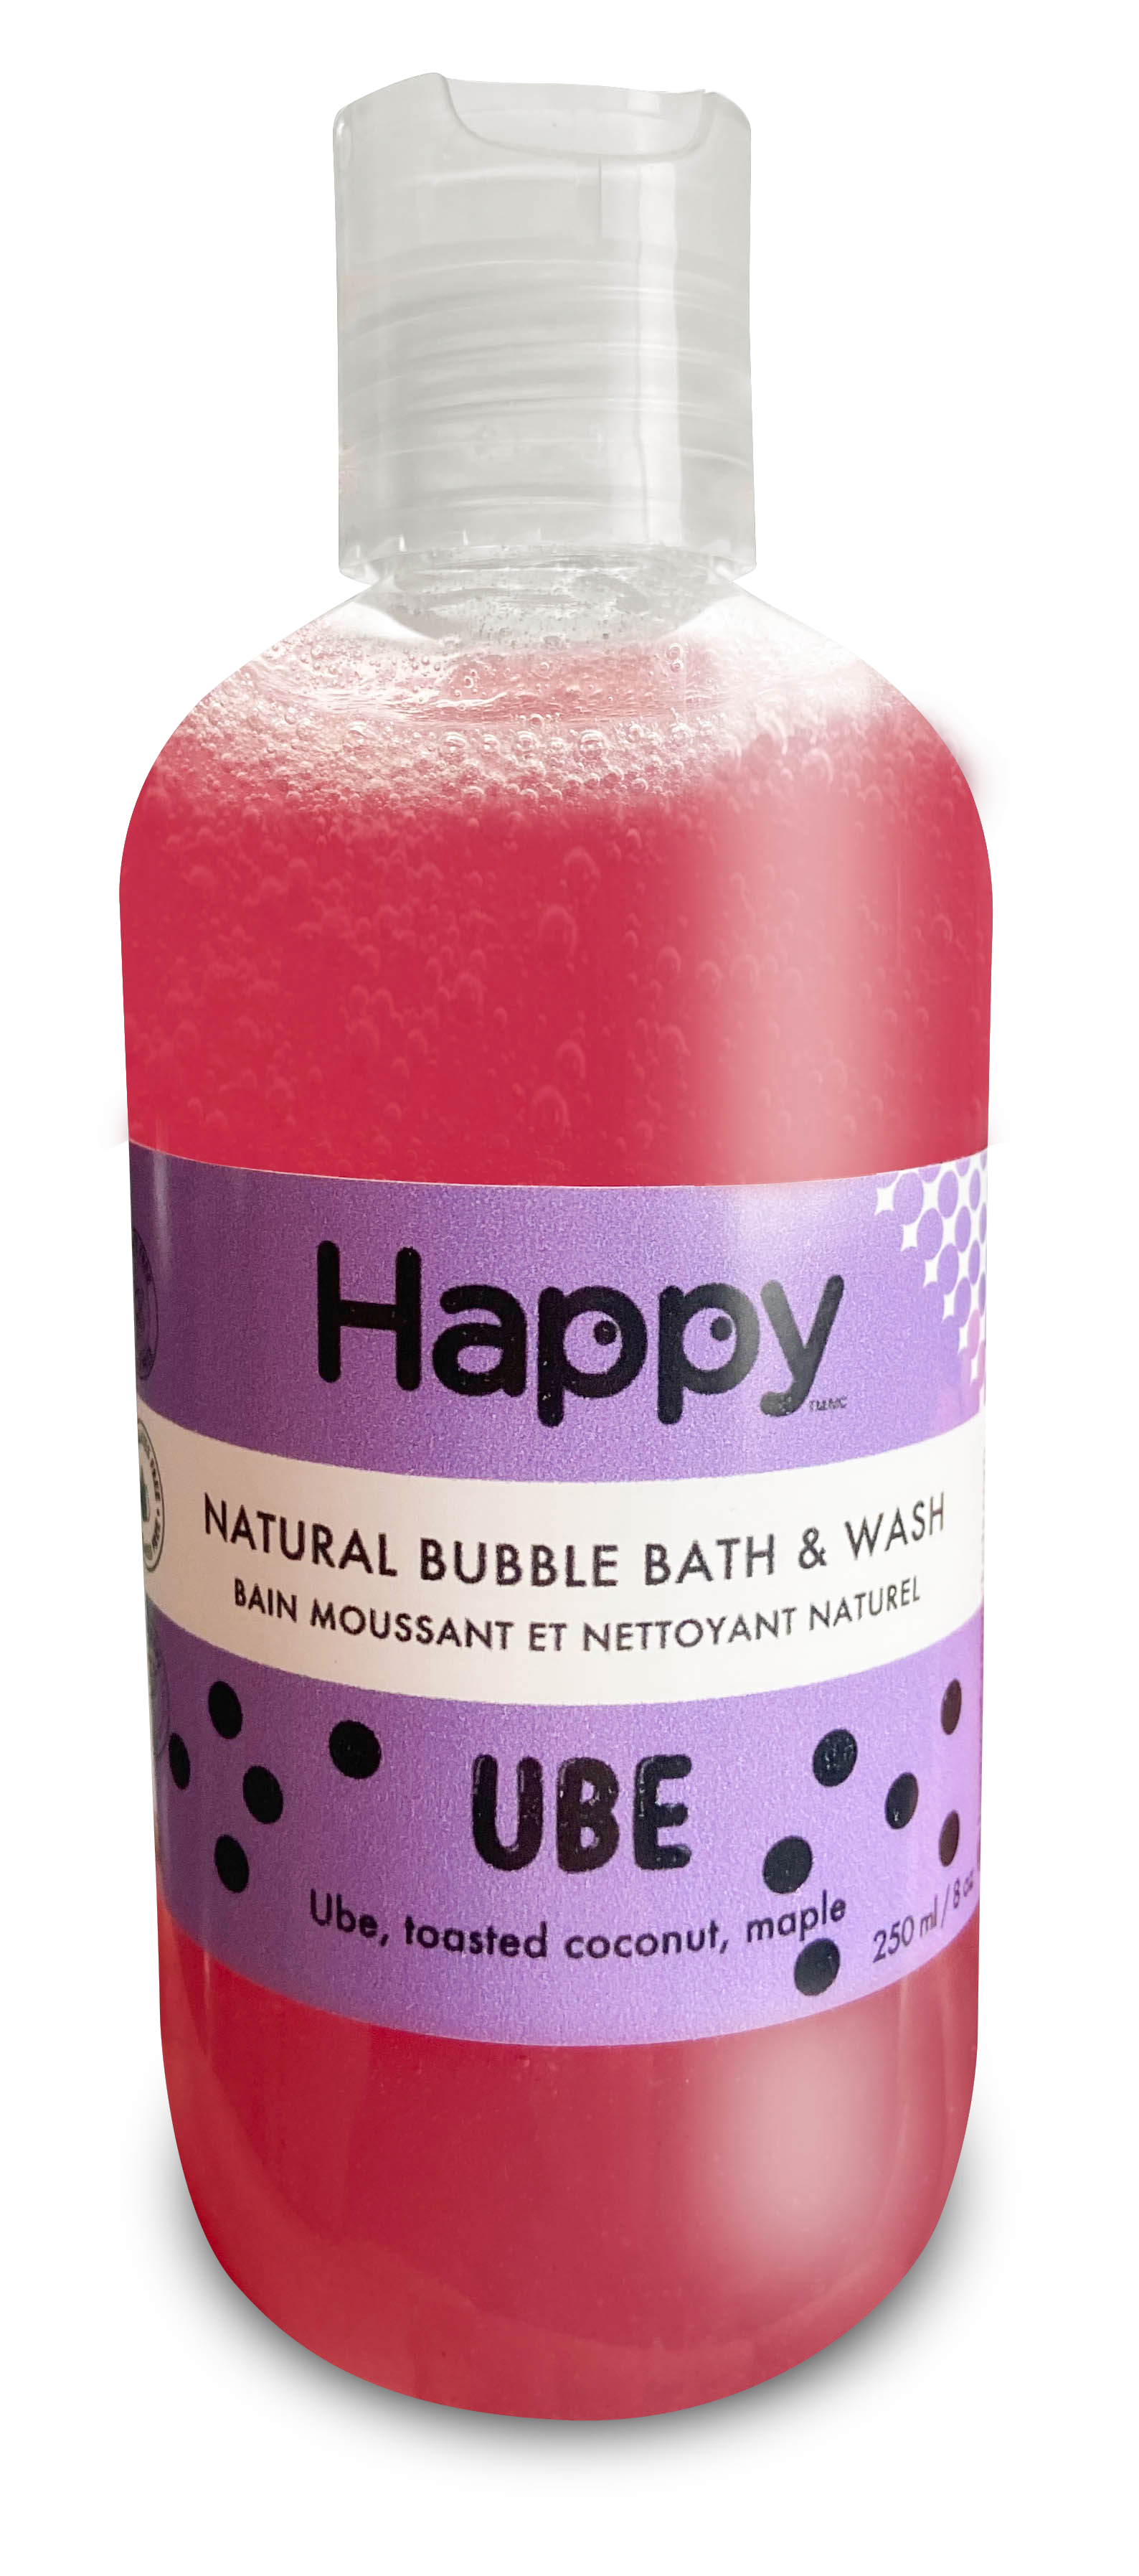 Ube Natural Bubble Bath & Wash